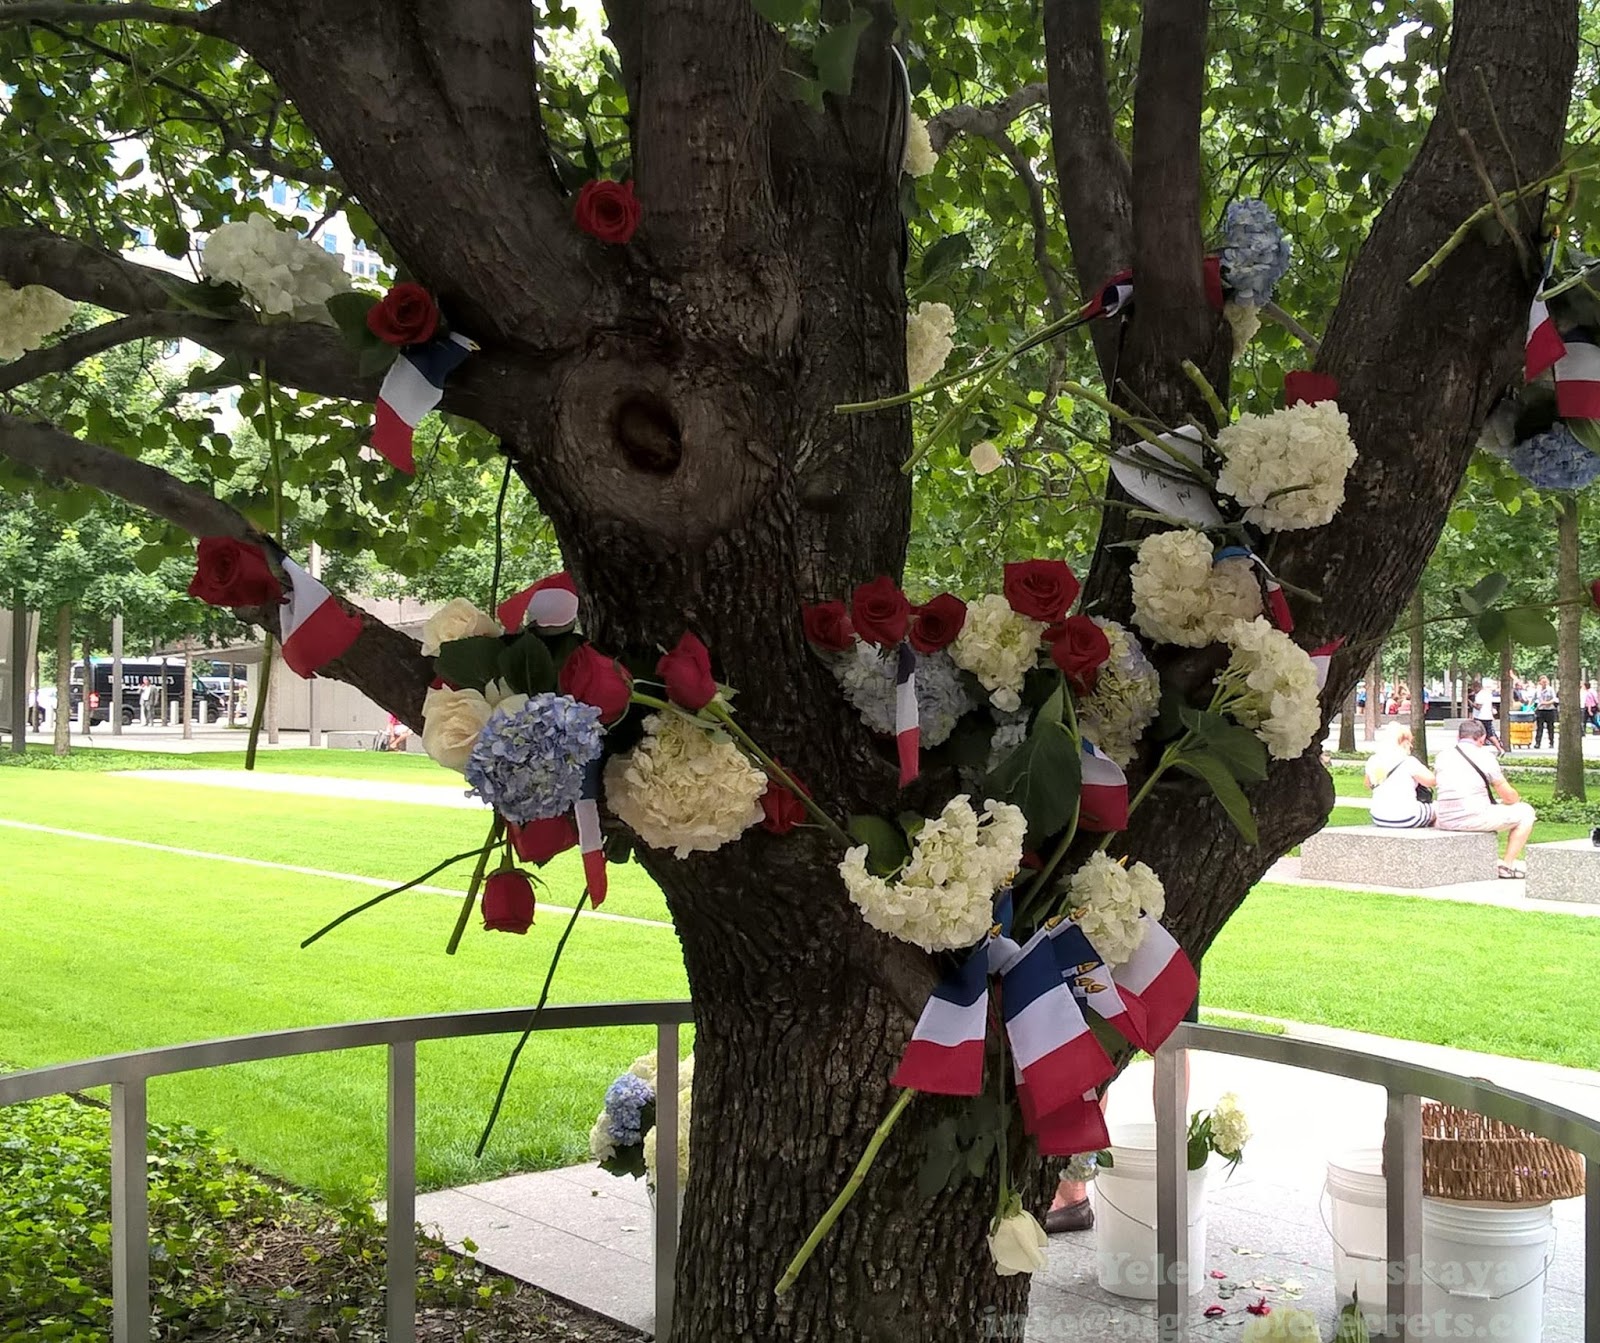 September 11th Survivor Tree